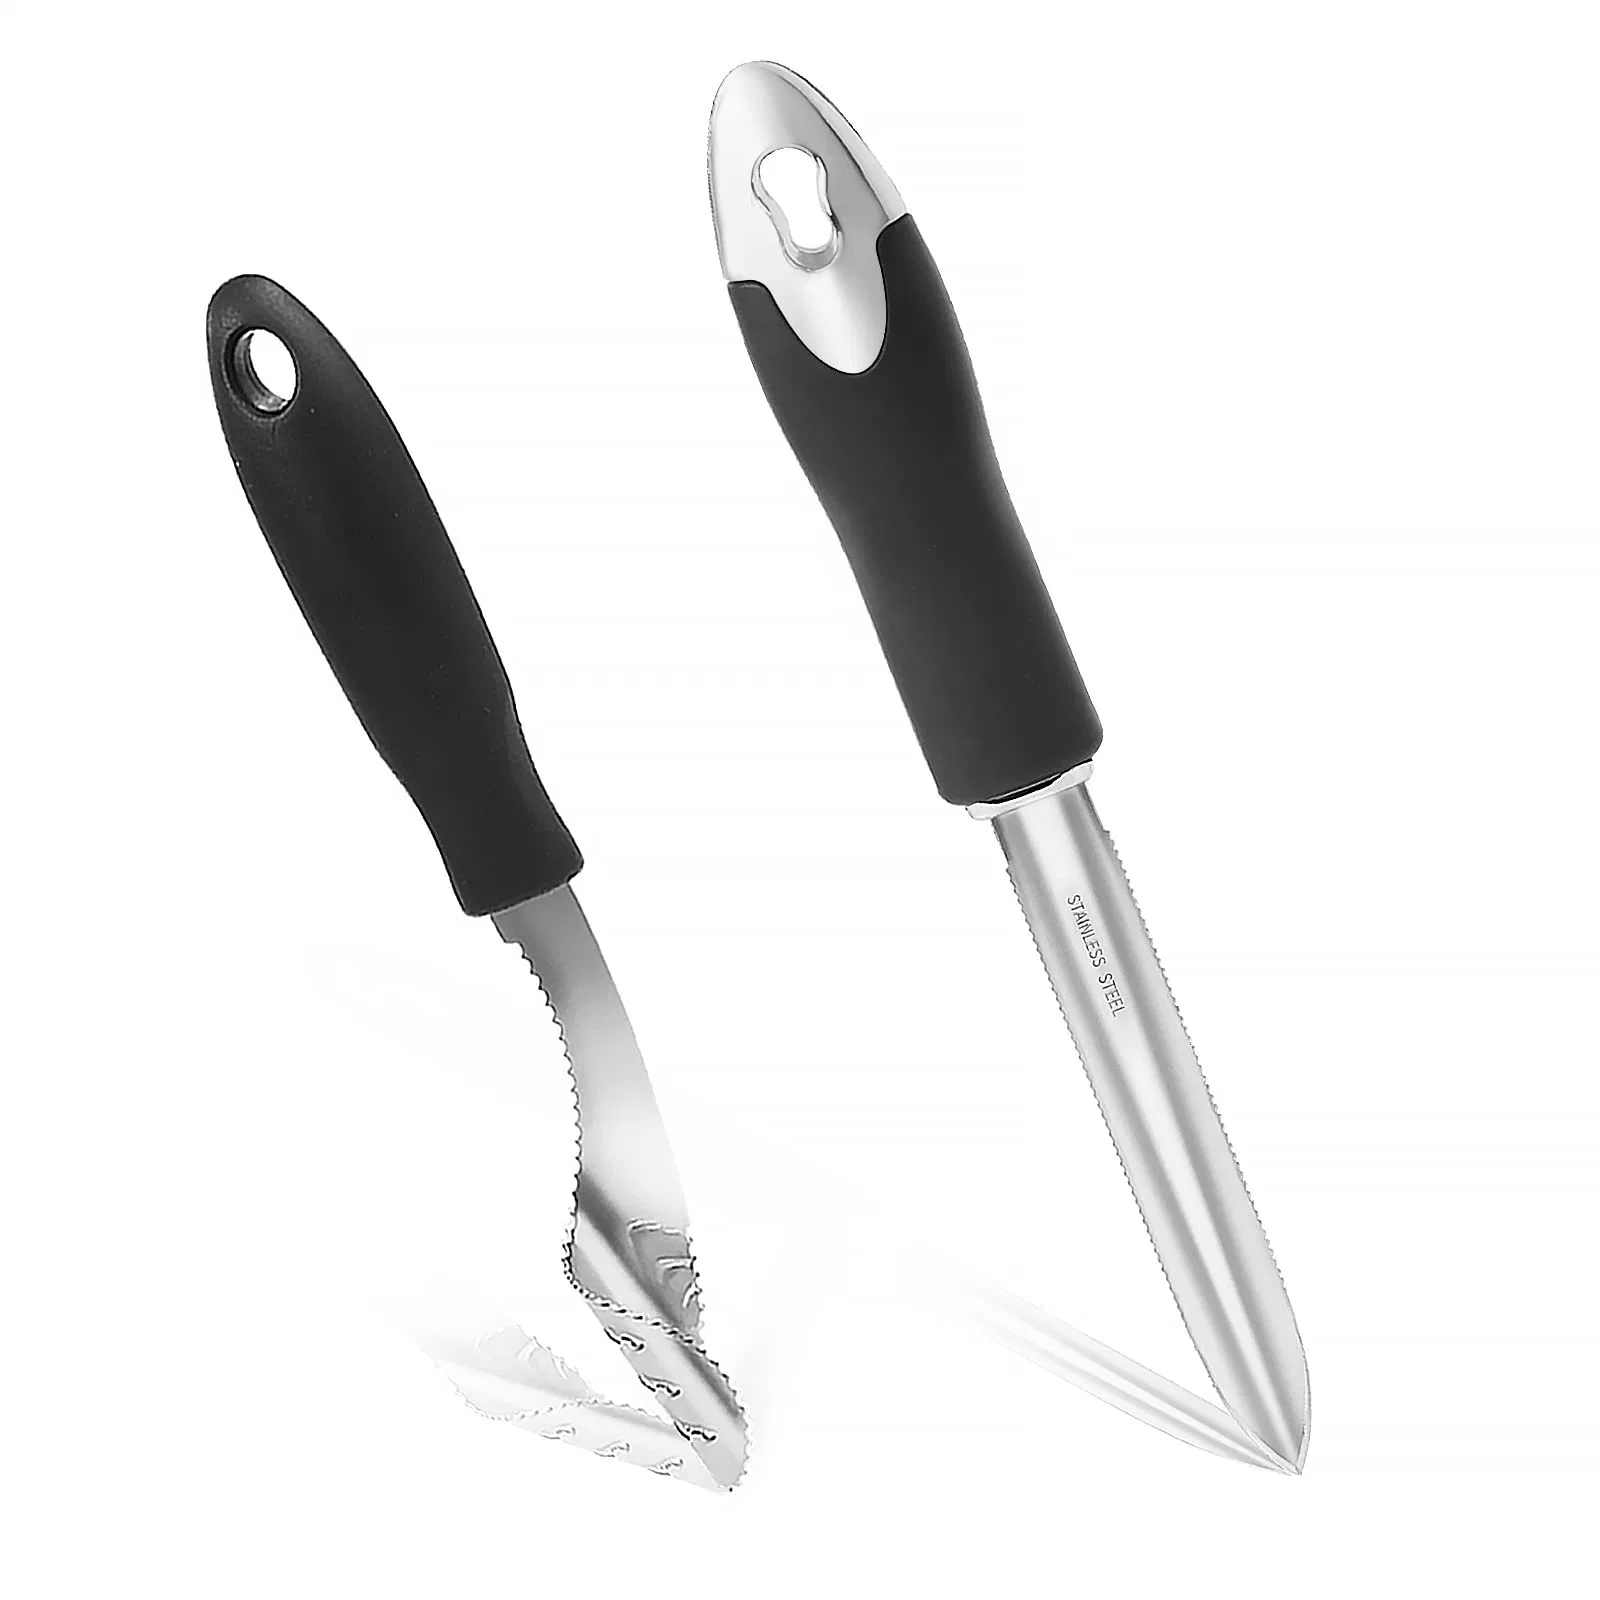 Pepper sacatestigos 2 equipos de cocina de acero inoxidable Mango de caucho de la herramienta de corte de cuchilla dentada